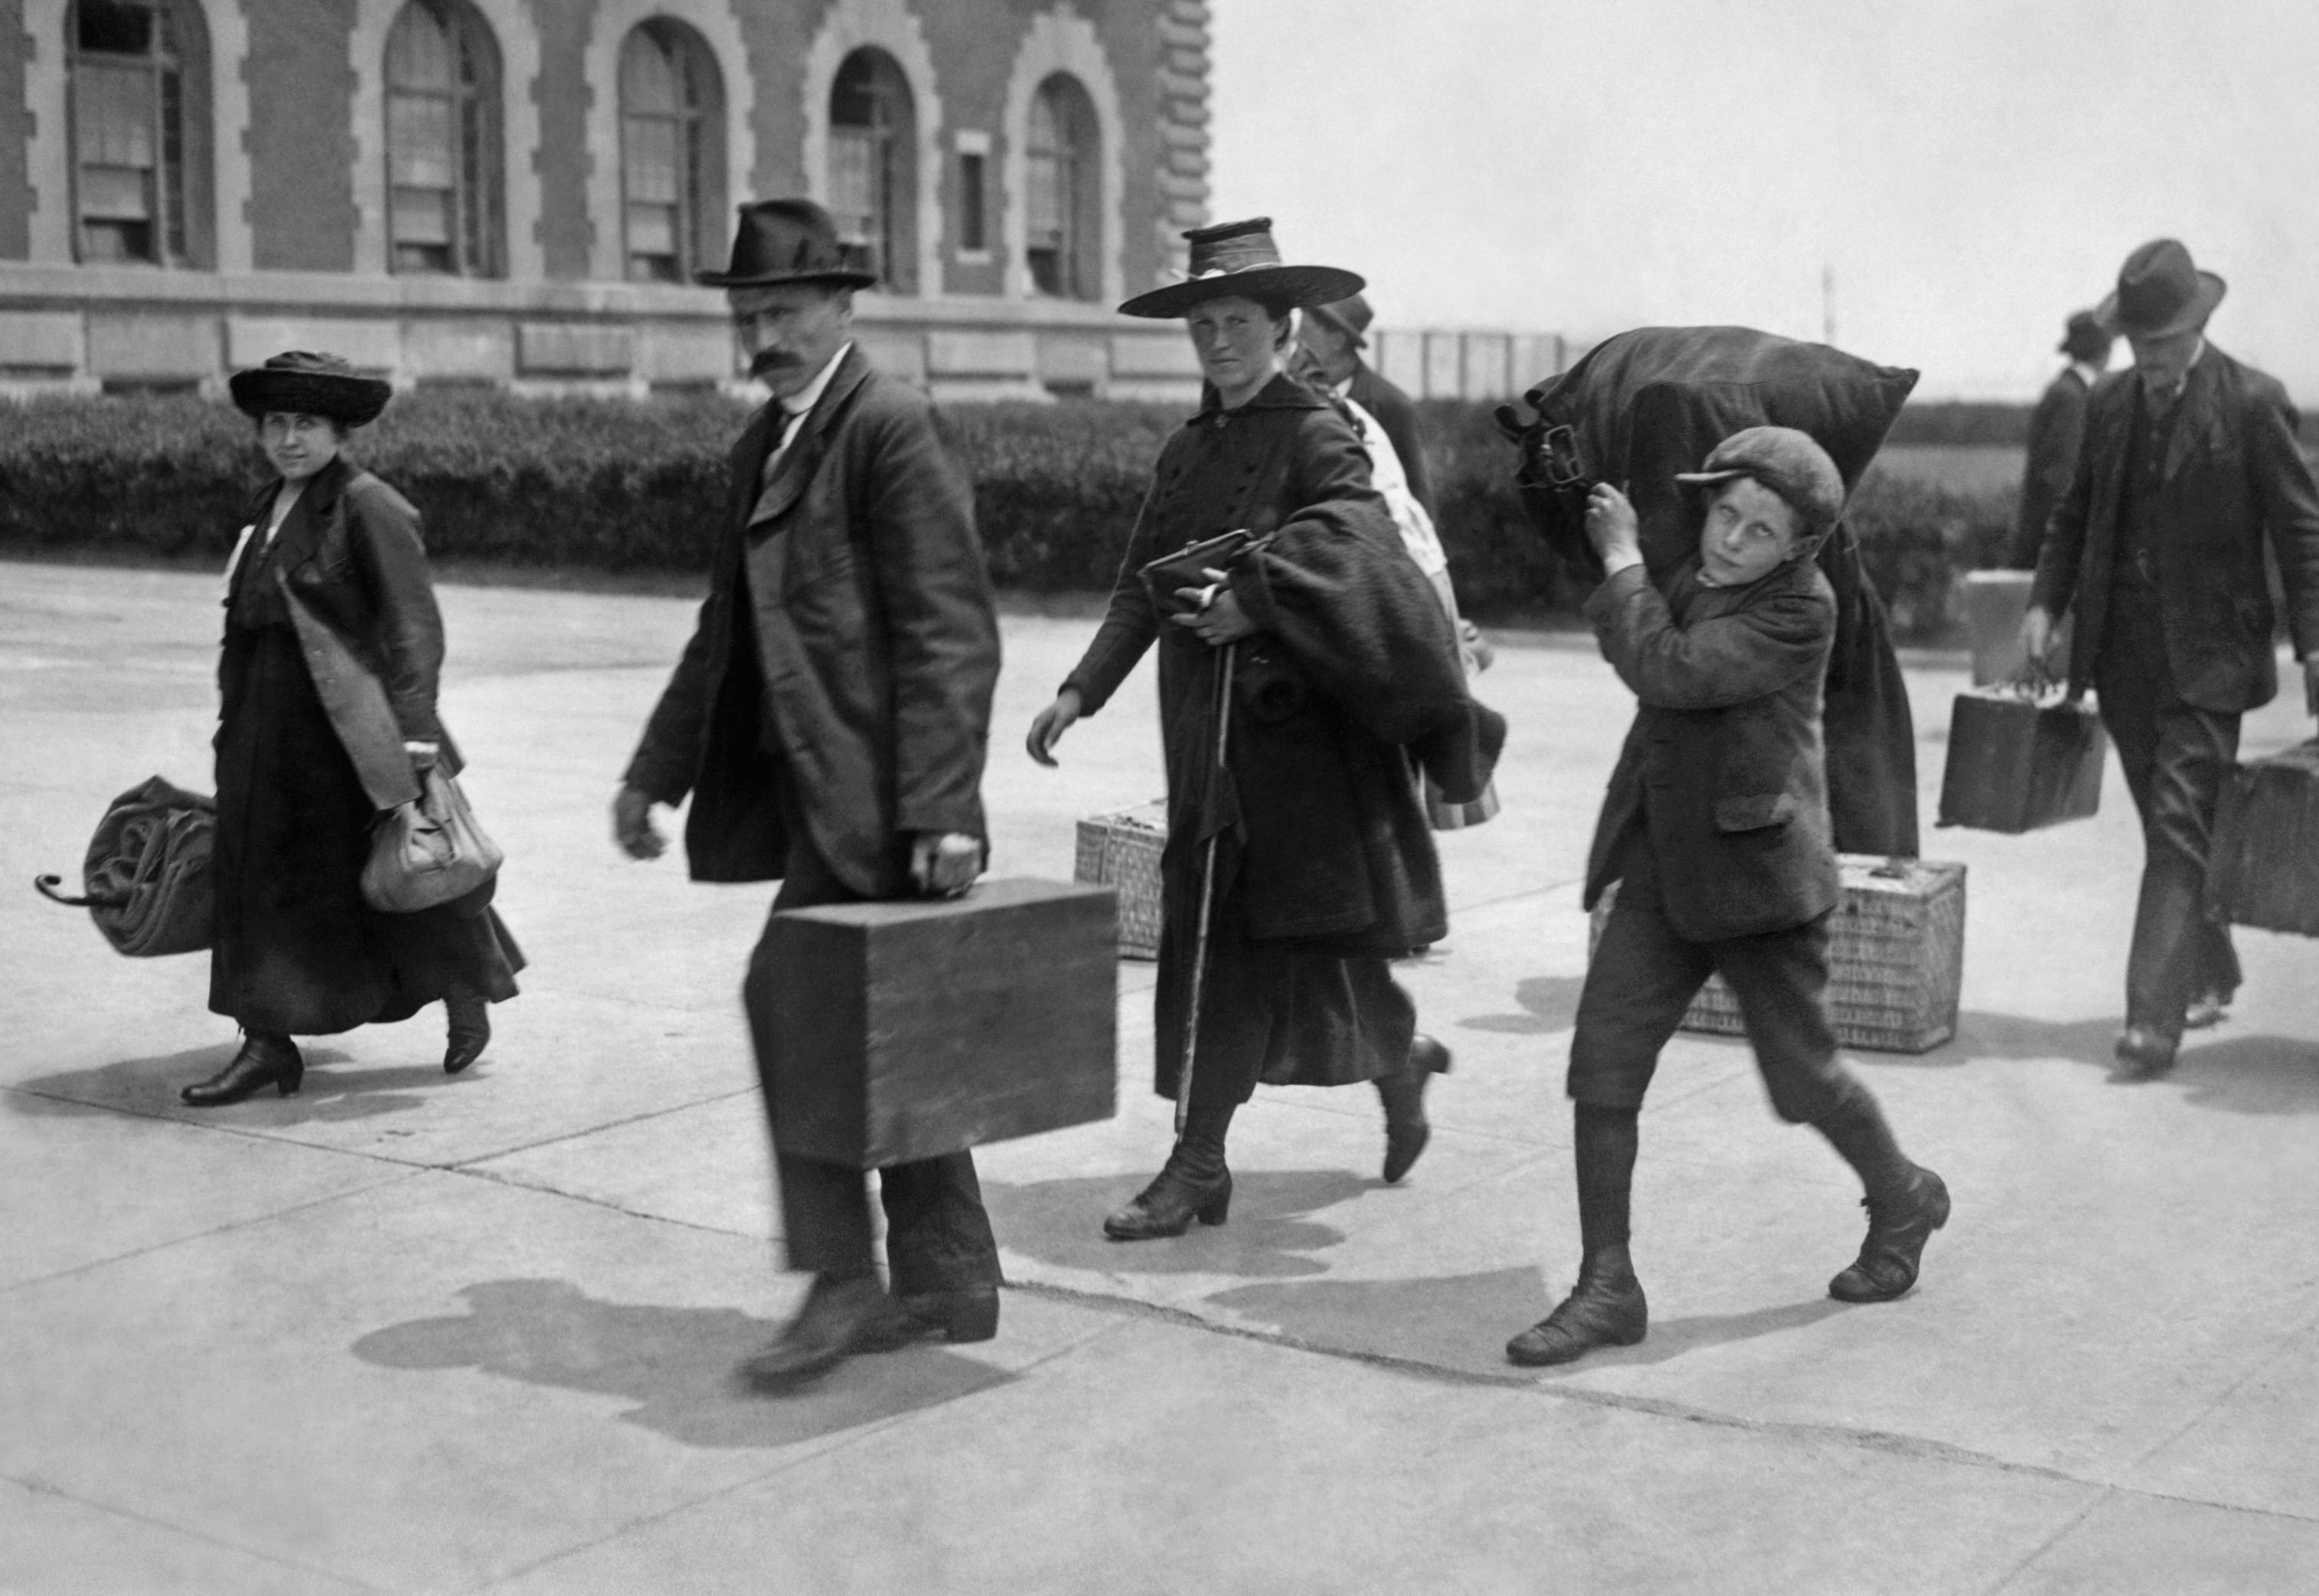 Zwischen 1892 und 1954 kamen fast 12 Millionen Menschen auf Ellis Island, New York, an